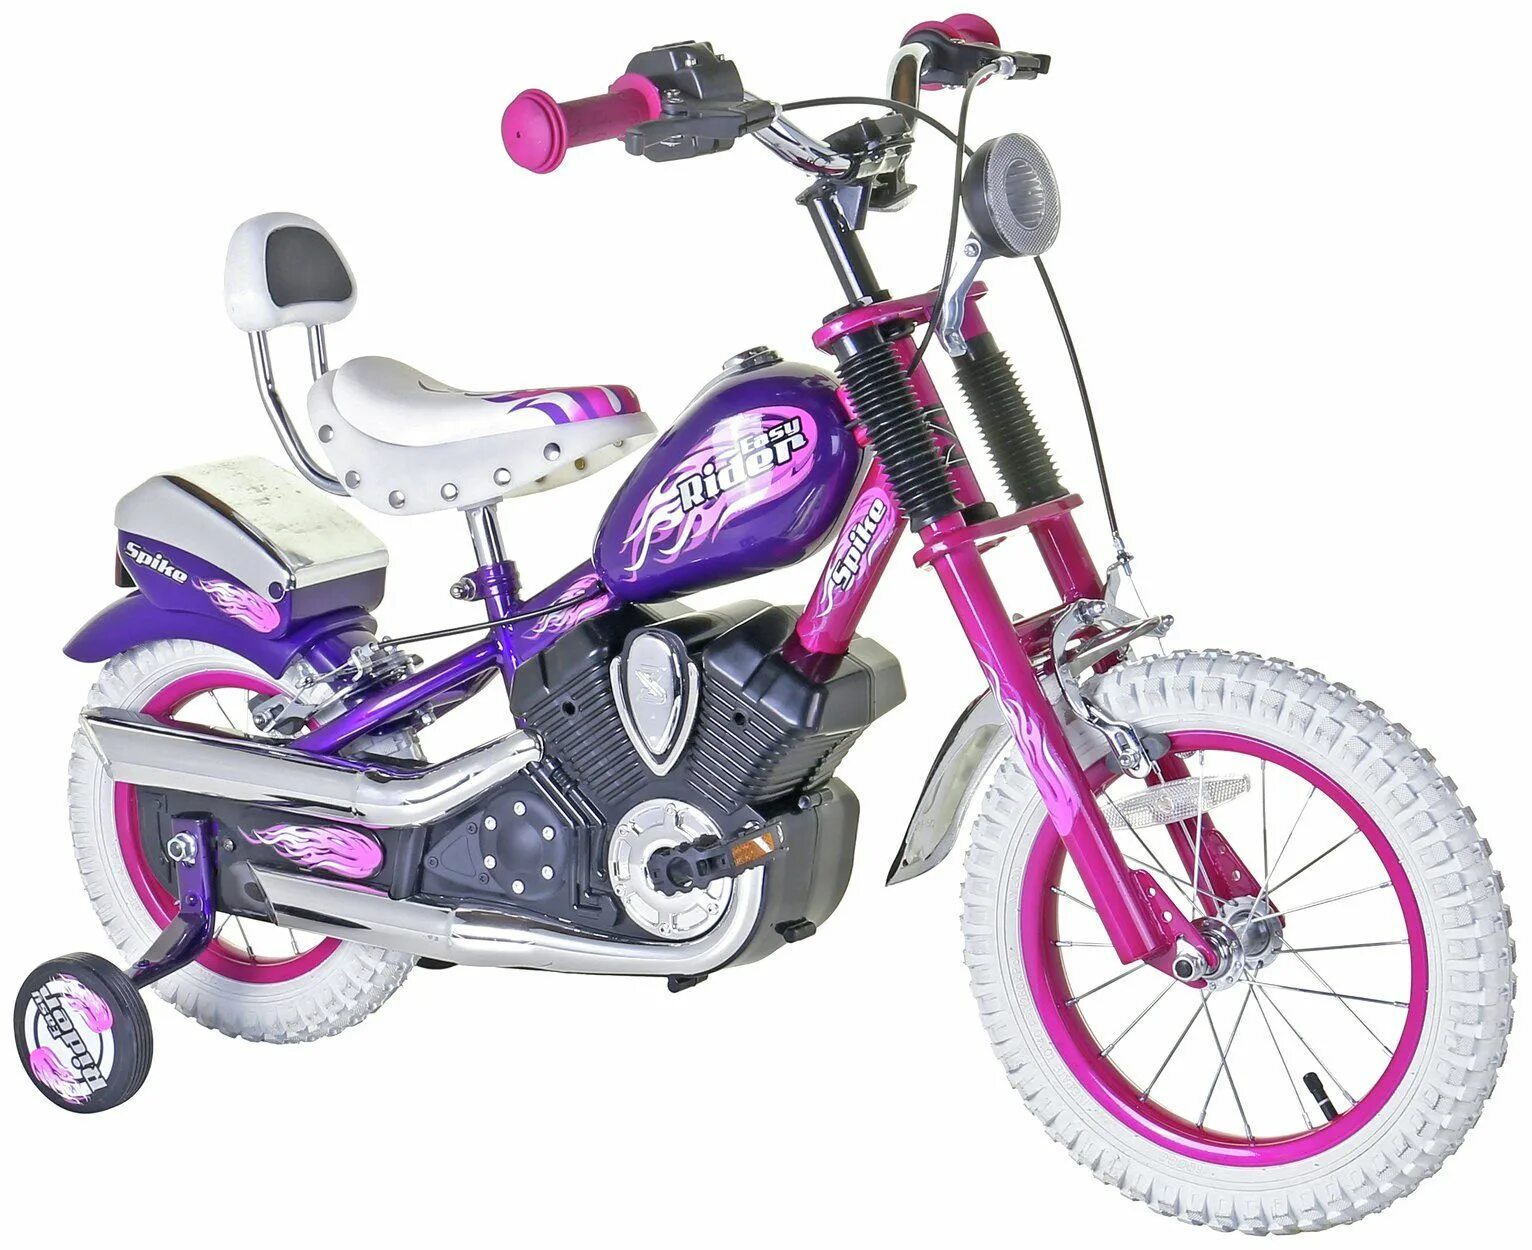 Велосипед для девочки 14 дюймов. Велосипед Spike easy Rider. Велосипед детский Racer 14 Max. Велосипед чоппер детский. Велосипед розовый для девочки.